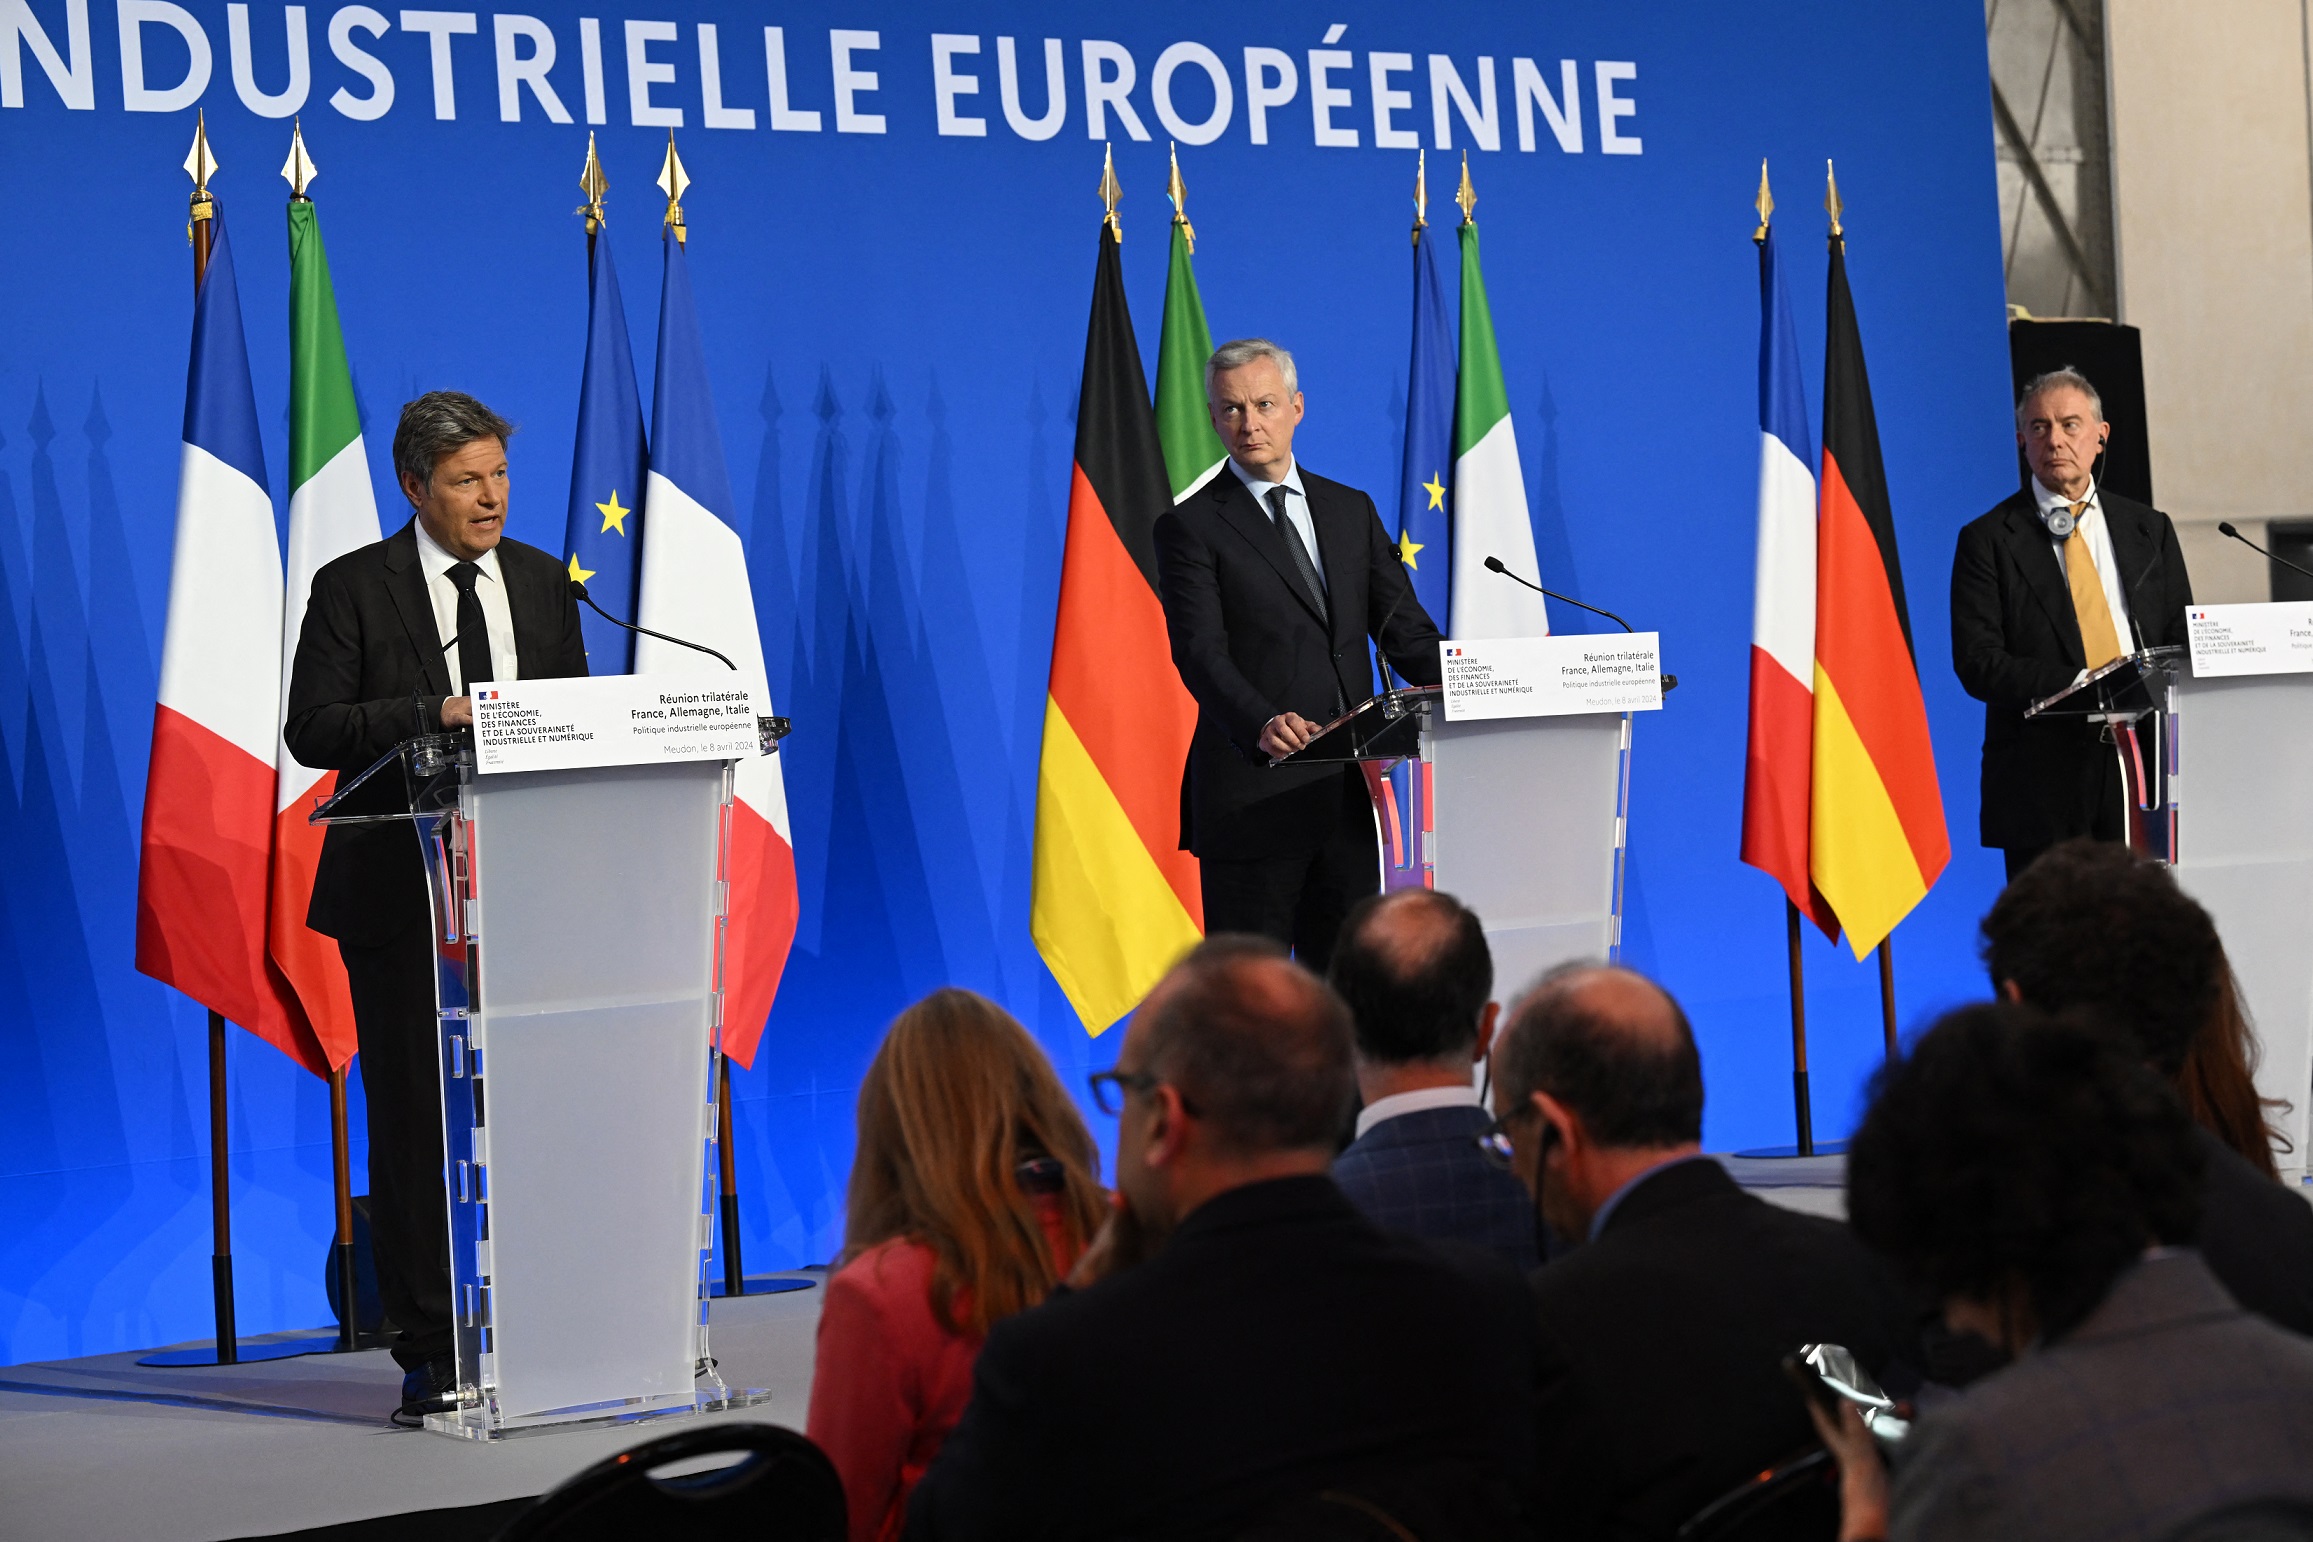 Industrie : l'Allemagne, l'Italie et la France plaident pour un choc de simplification en Europe